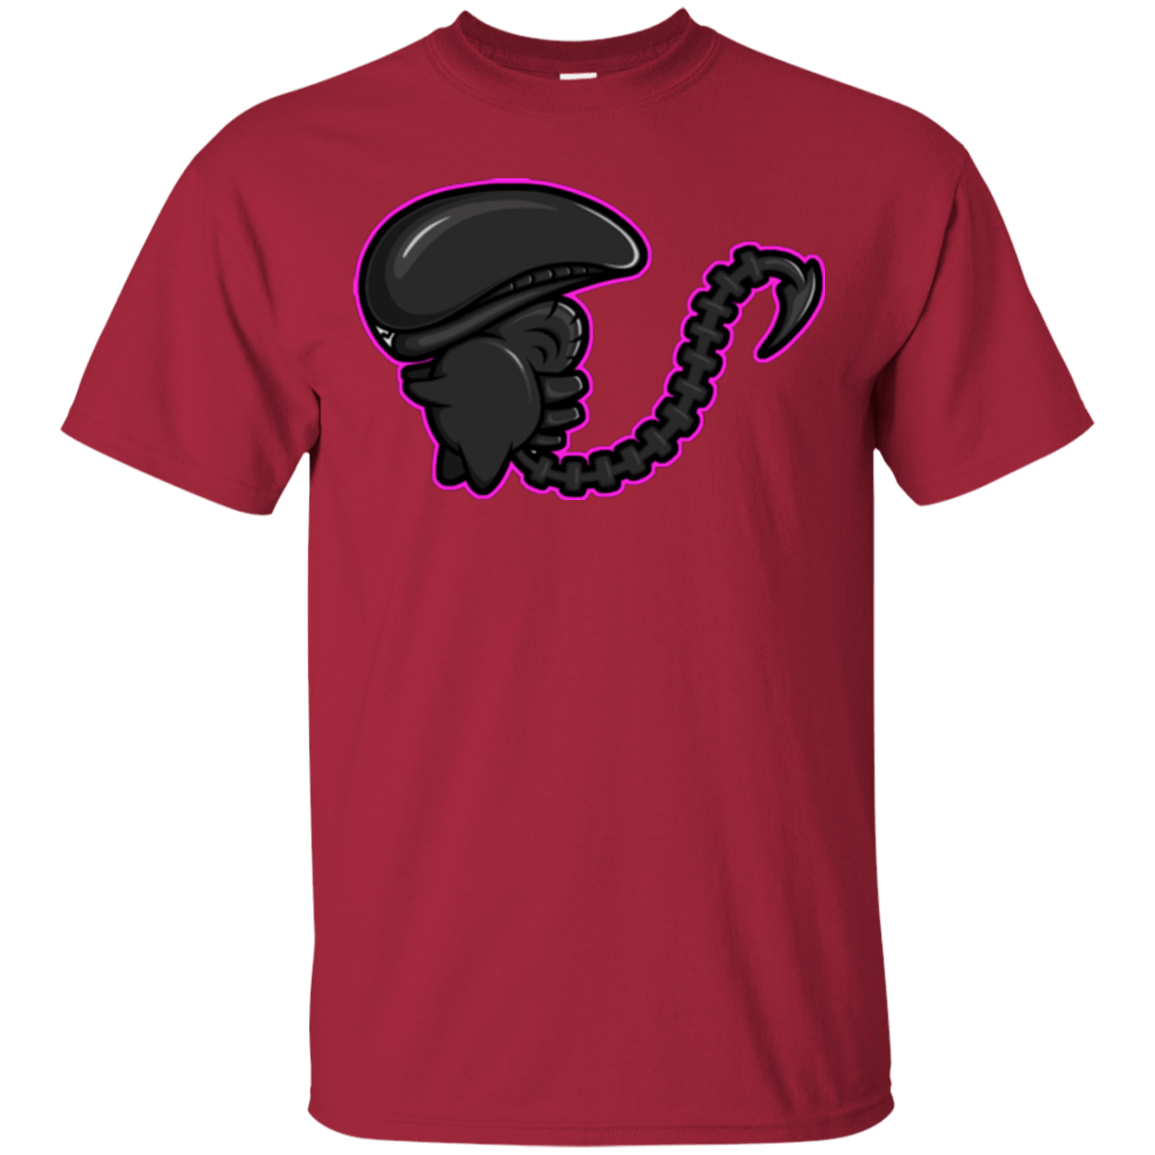 T-Shirts Cardinal / Small Super Cute Alien T-Shirt